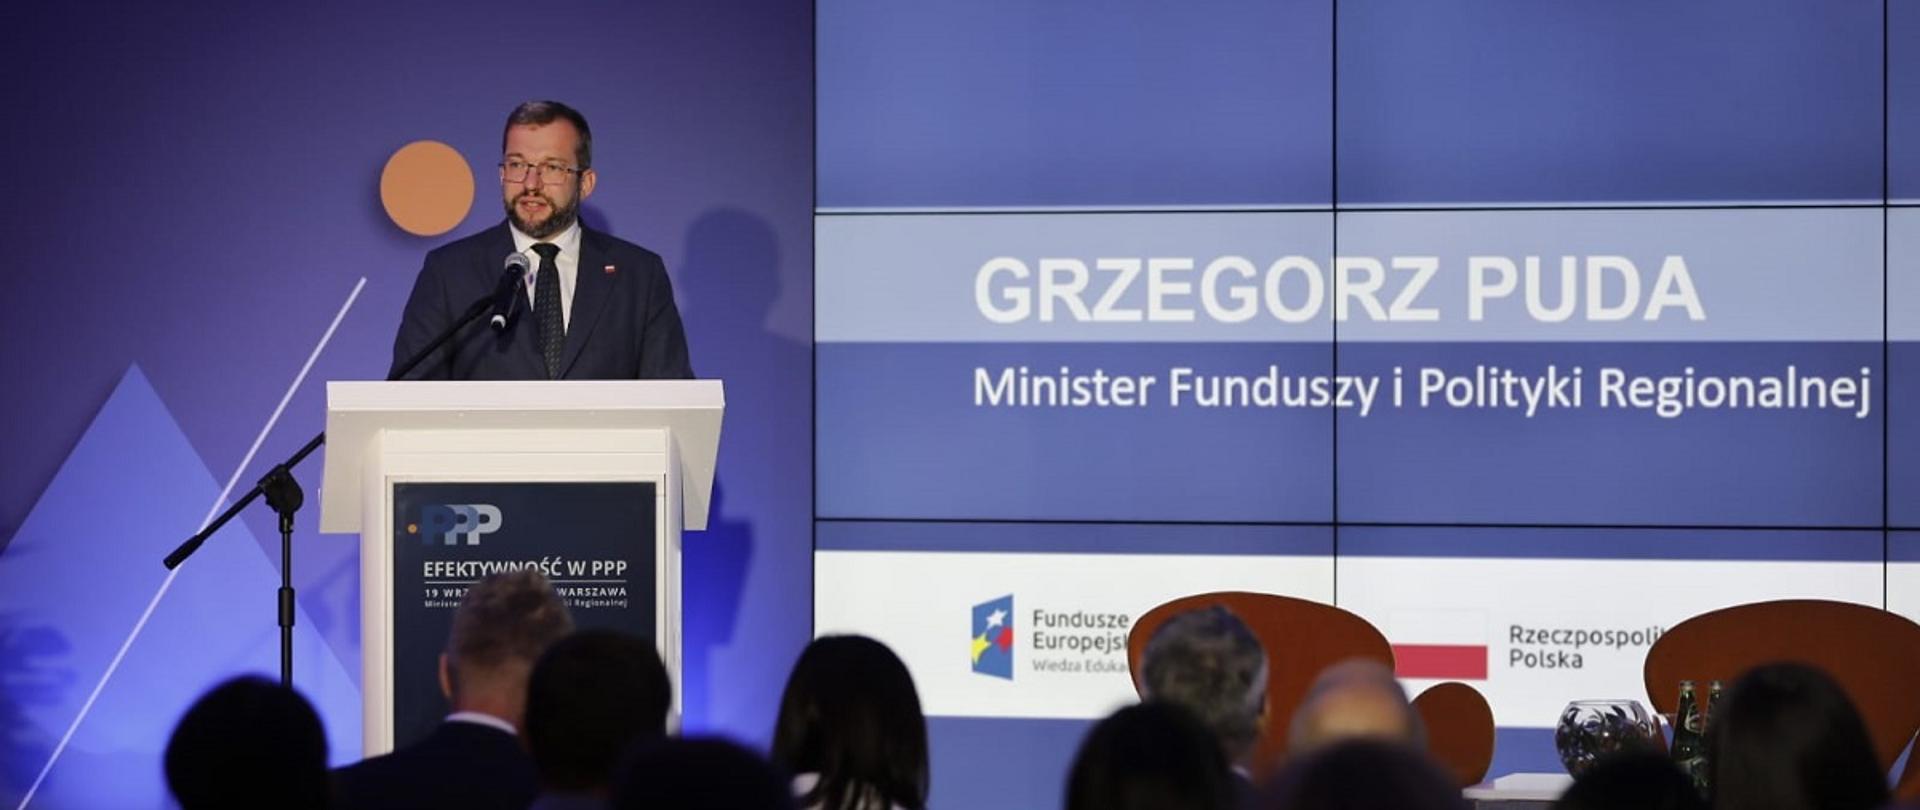 Minister Grzegorz Puda stoi przy mównicy i przemawia do mikrofonu, po jego prawej stronie grafika informująca, że przemawia szef MFiPR
